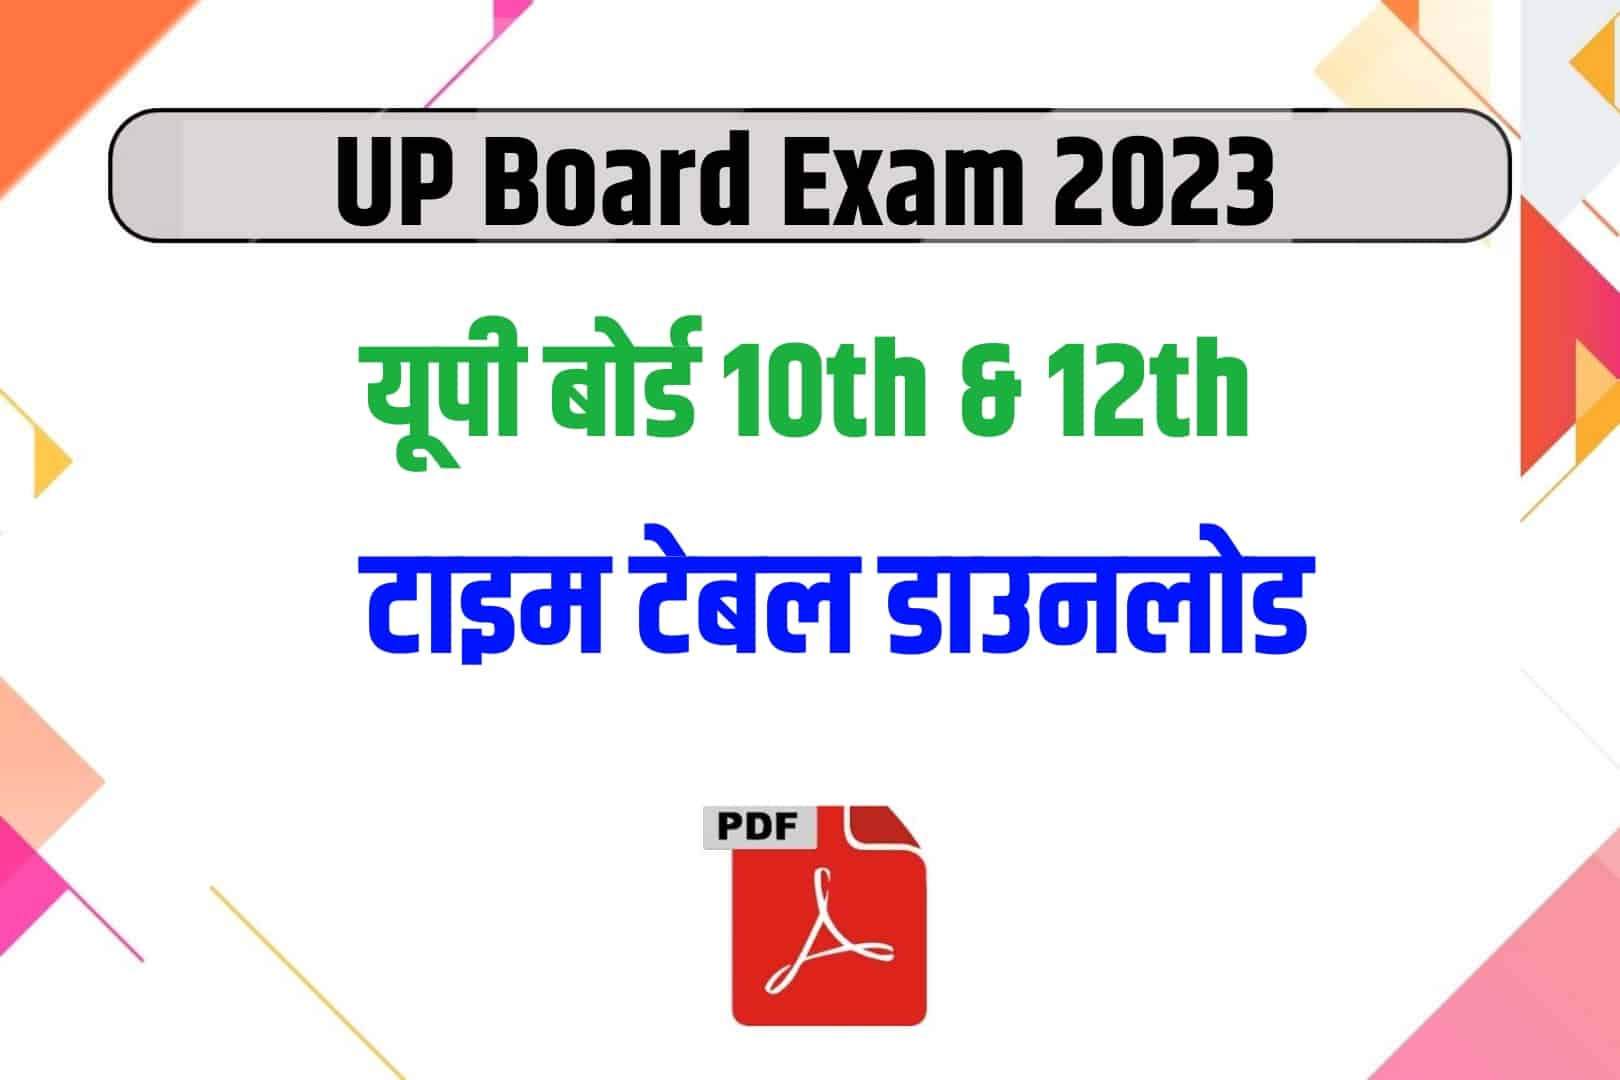 UP Board Class 12th & 10th Time table 2023 : यूपी बोर्ड कक्षा 10वीं और 12वीं टाइम टेबल पीडीएफ